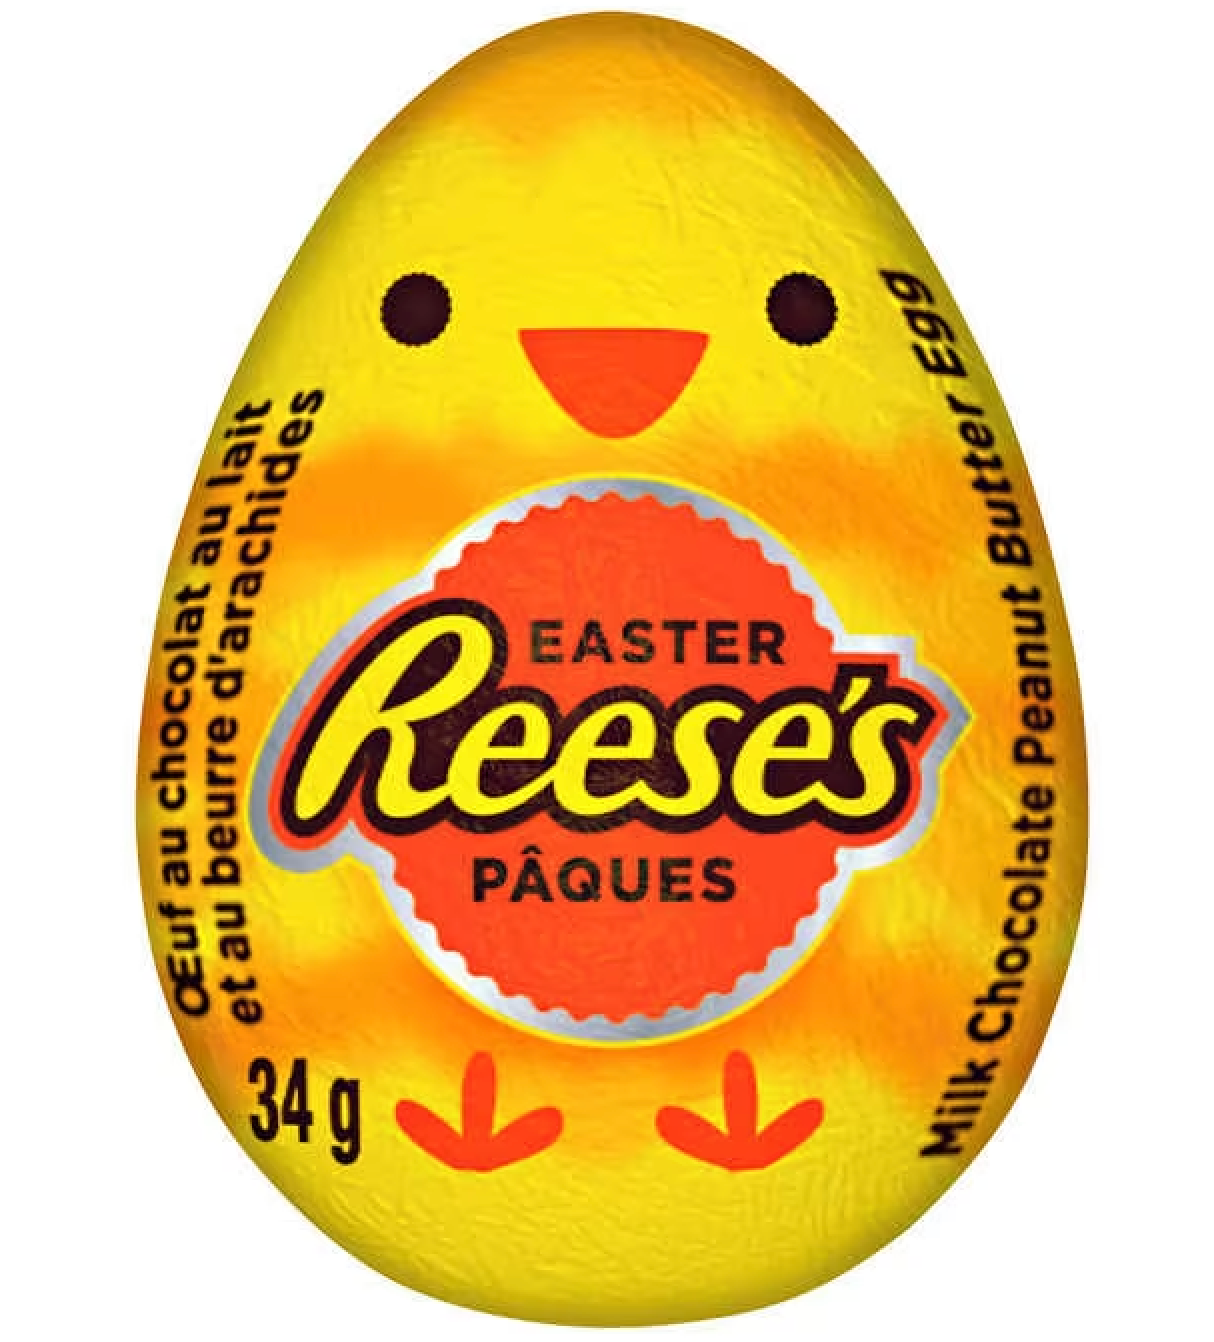 Reese's Easter Egg - 34g